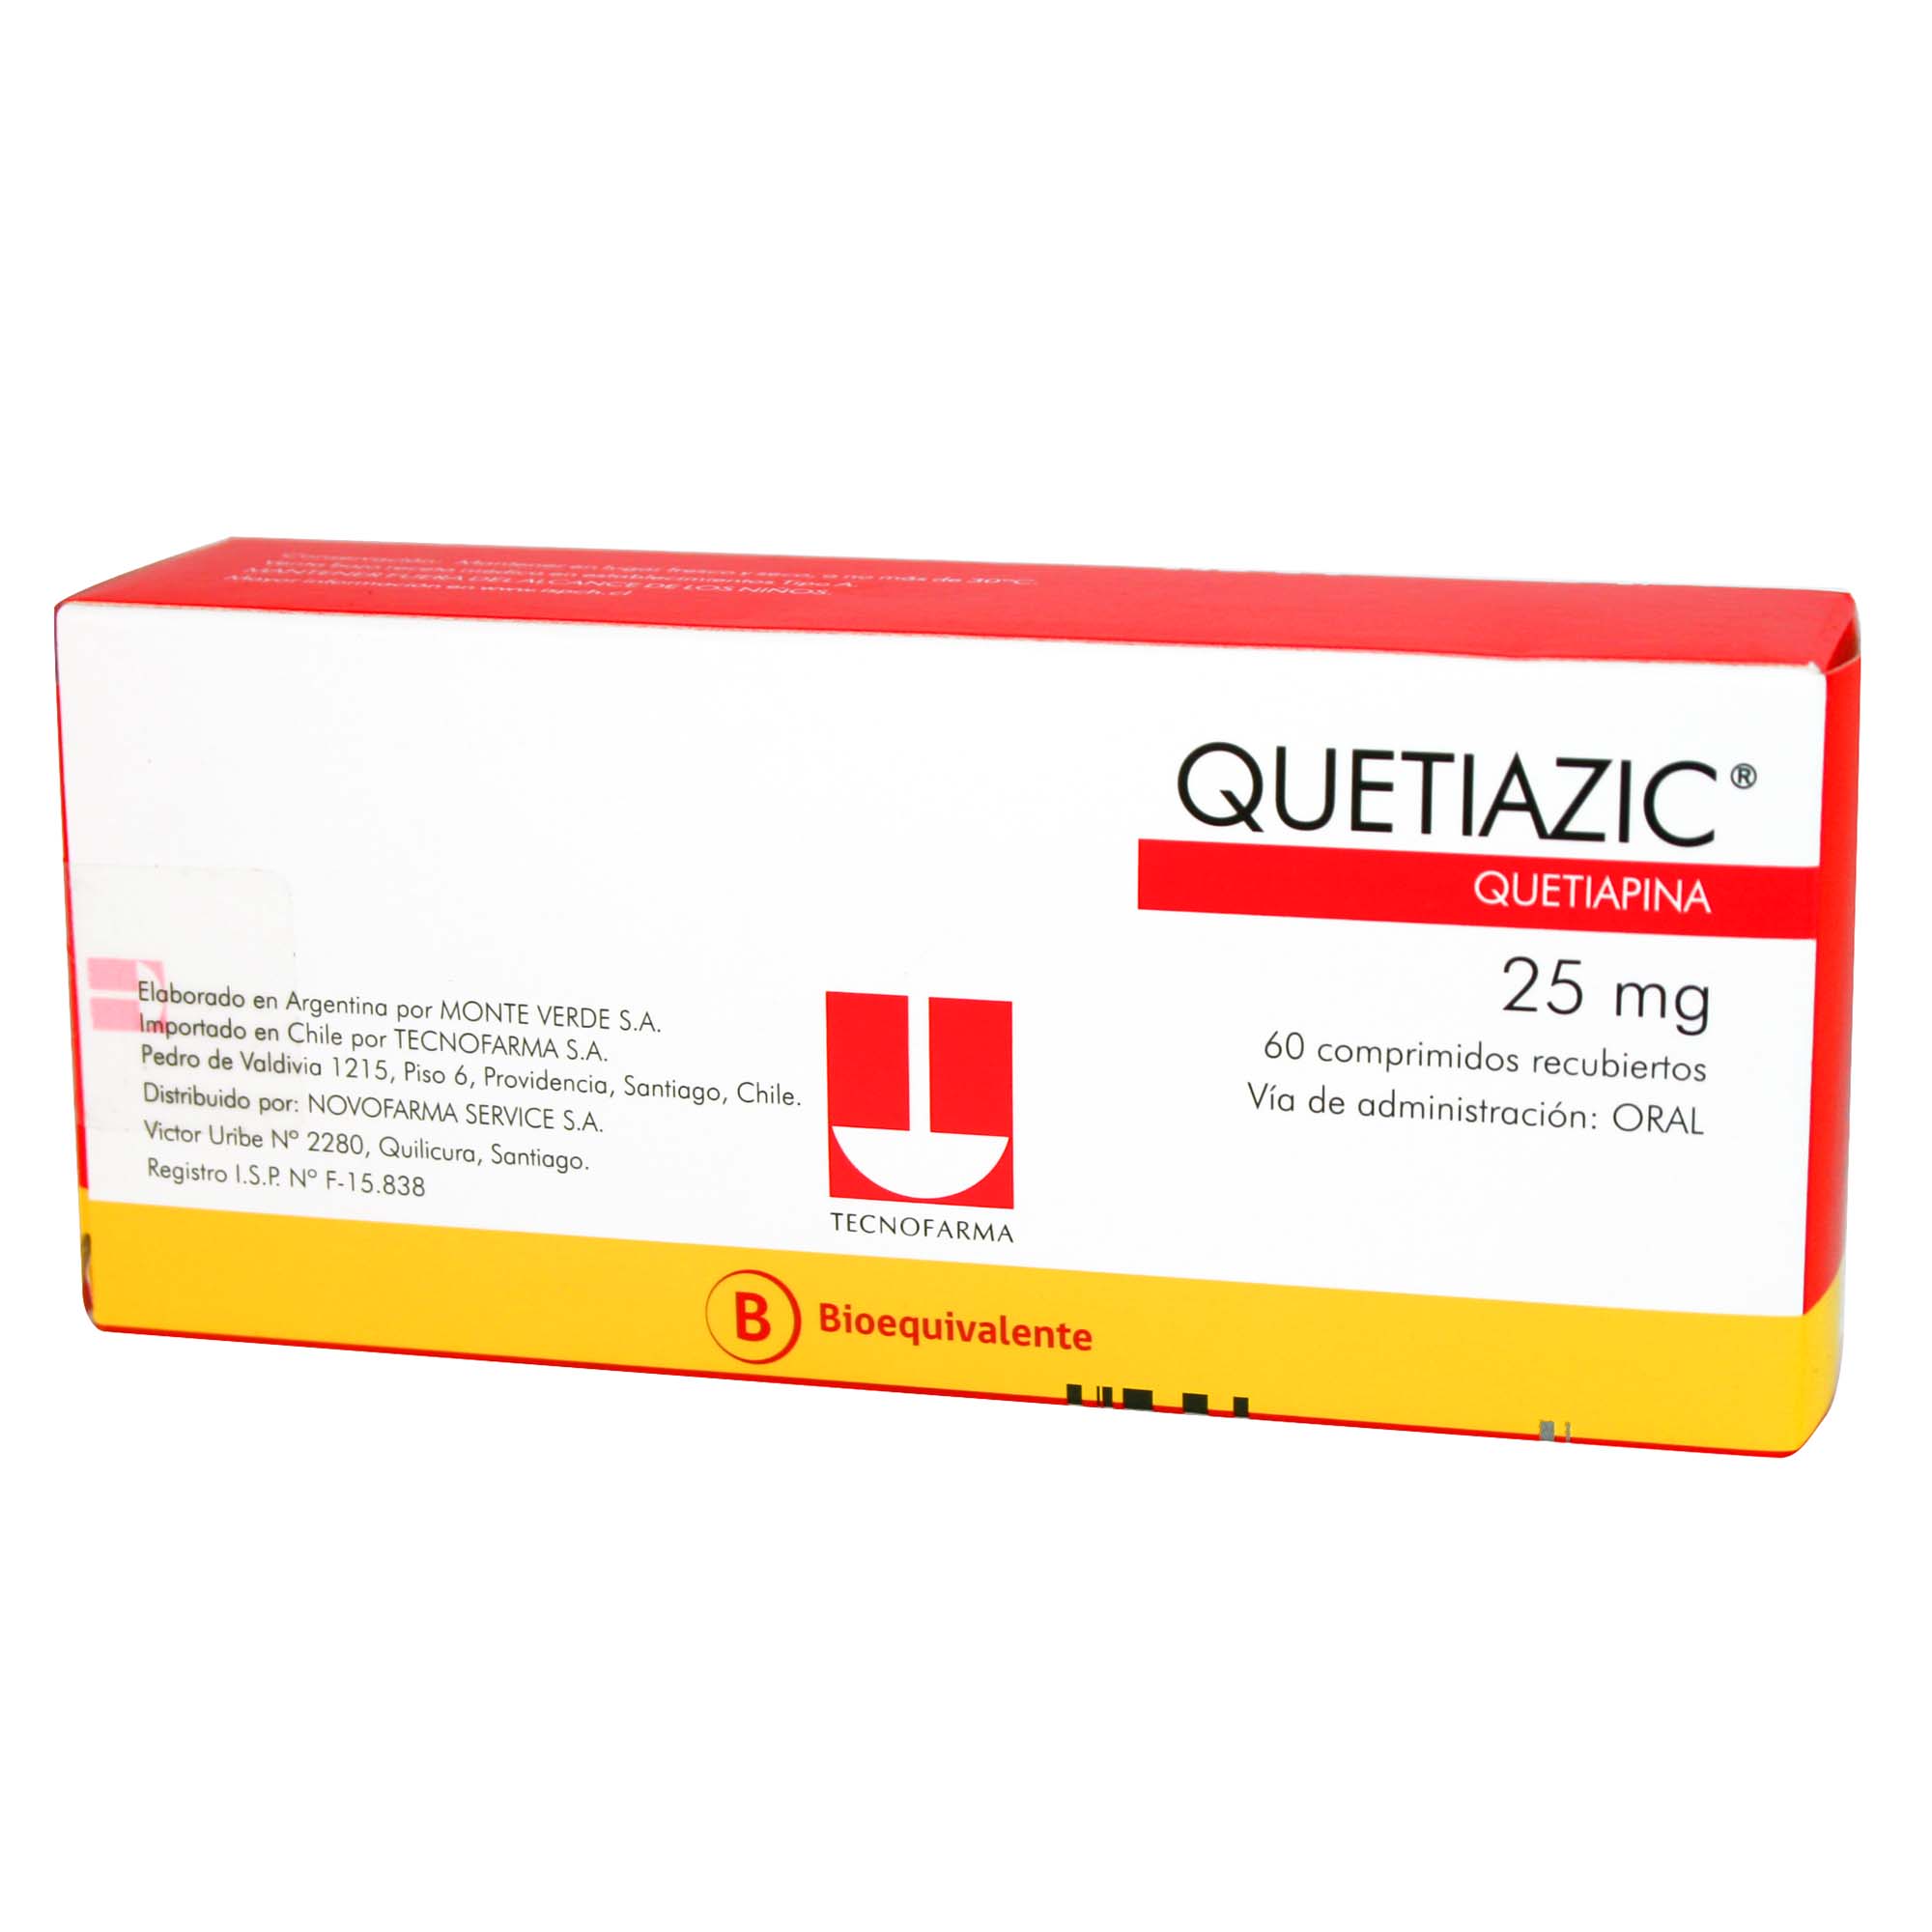 Quetiazic Quetiapina 25 mg 60 Comprimidos Recubierto | Farmacias Cruz Verde